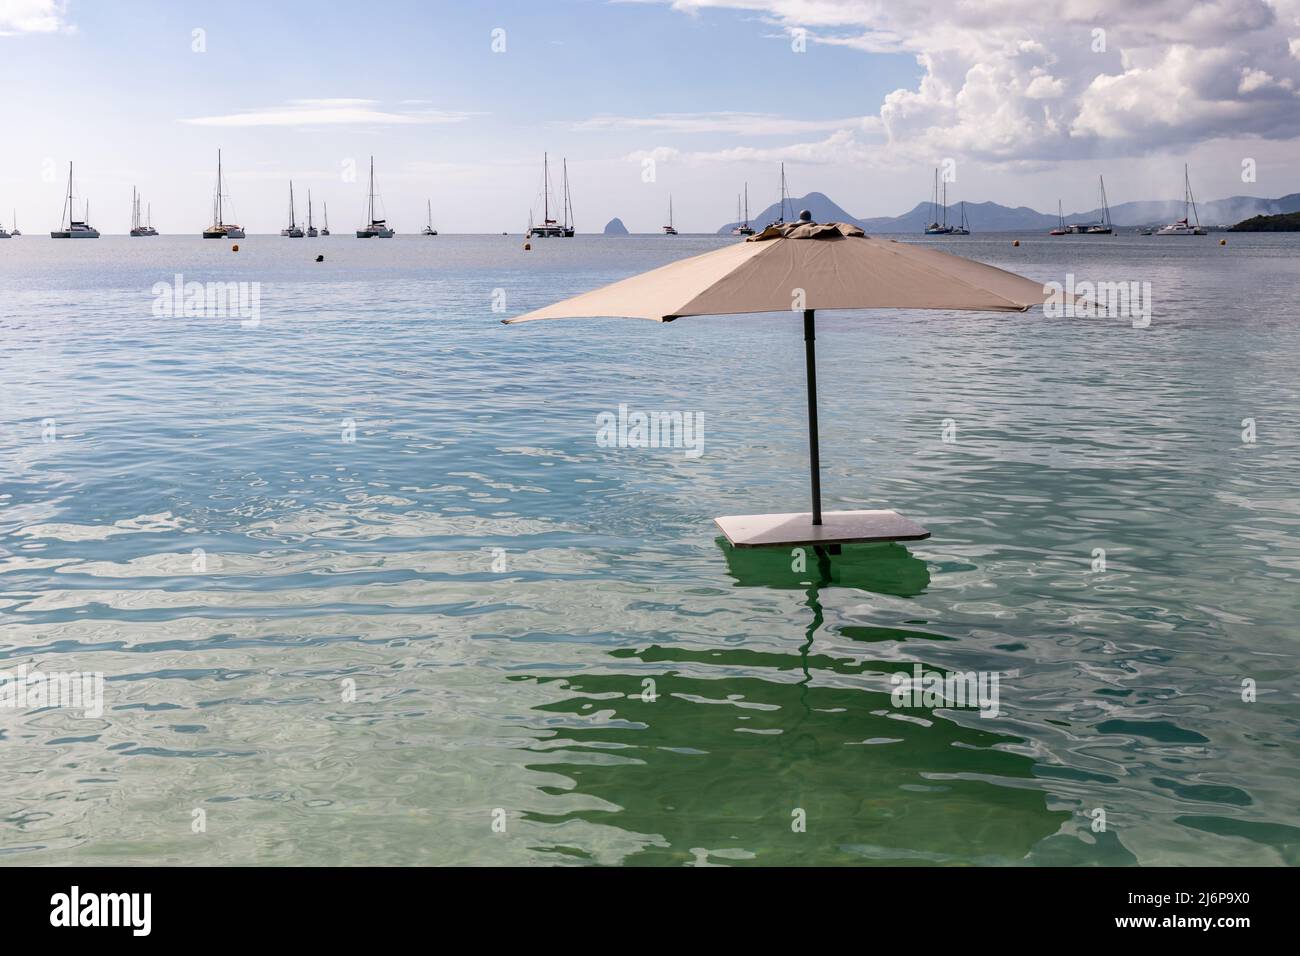 Bar table dans la mer à Pointe Marin plage, Sainte-Anne, Martinique, FWI Banque D'Images